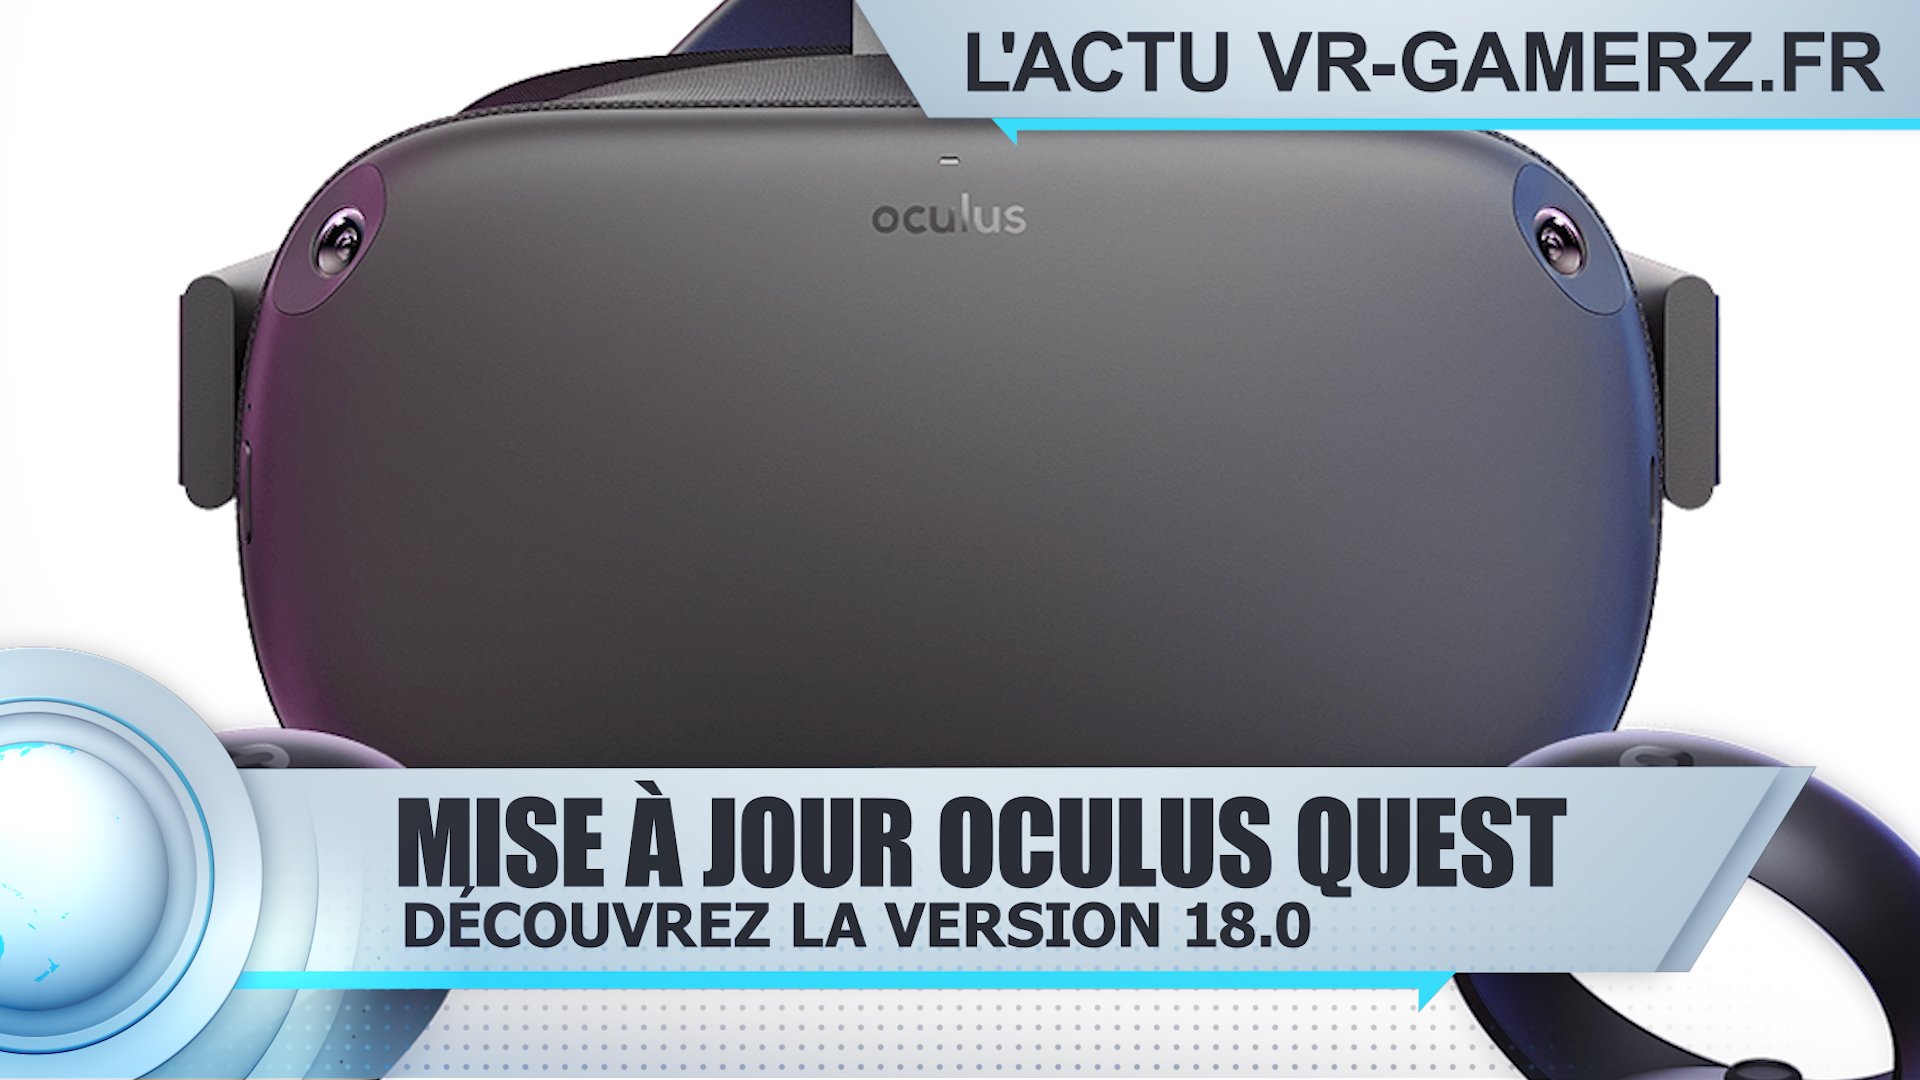 L’Oculus quest passe en version 18